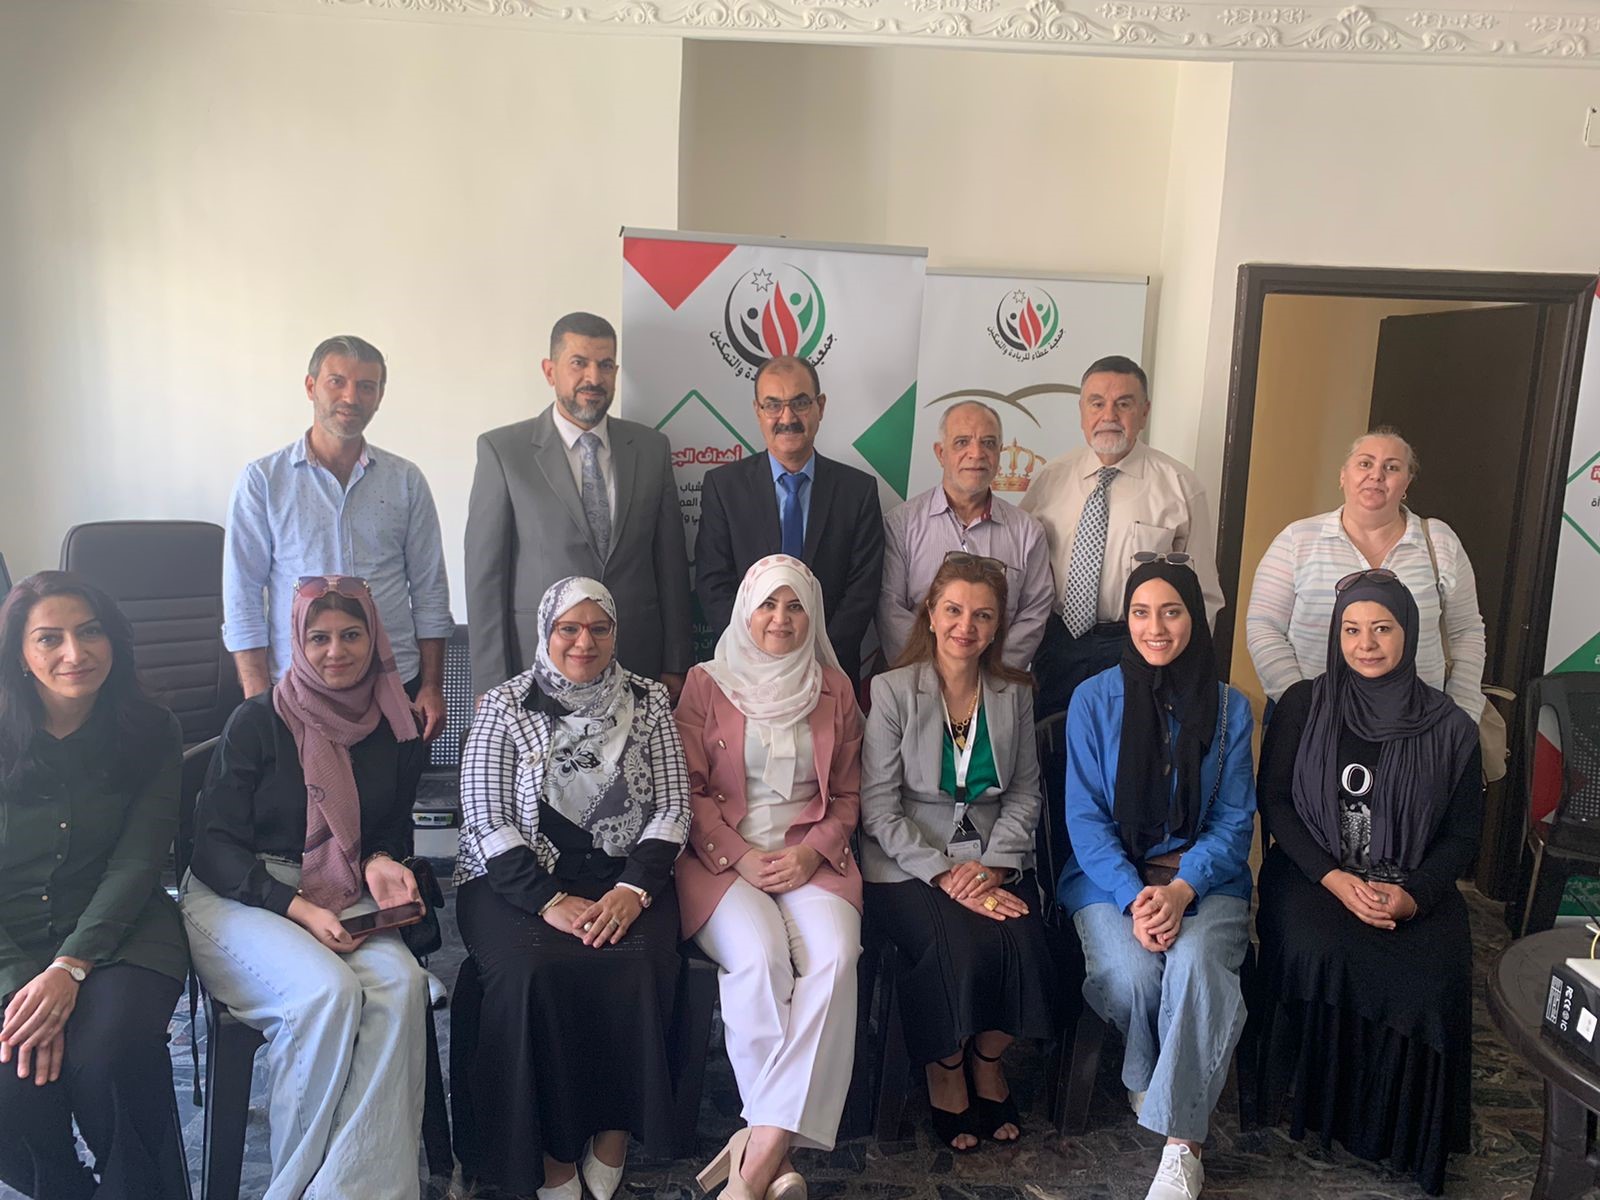  "عمان العربية" وجمعية عطاء يطلقان أول دورة تدريبية في عالم الميتافيرس على مستوى المملكة